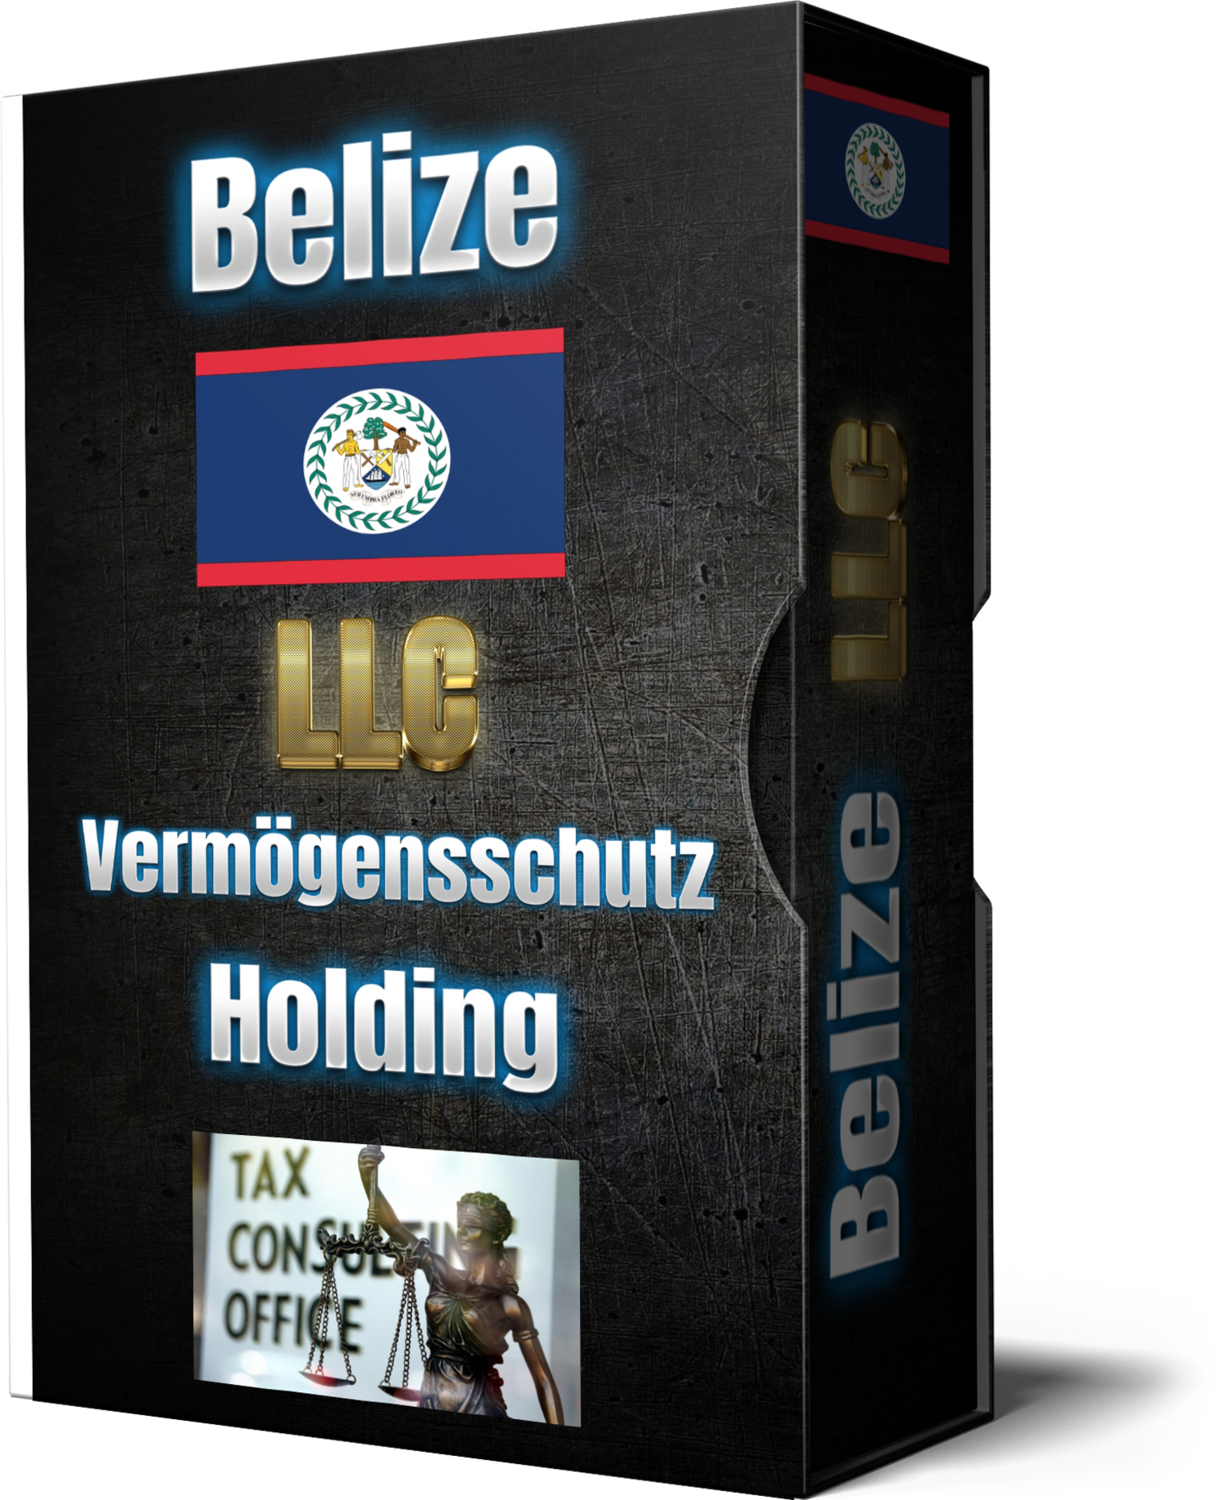 Belize LLC als Holding (Firmengründung)